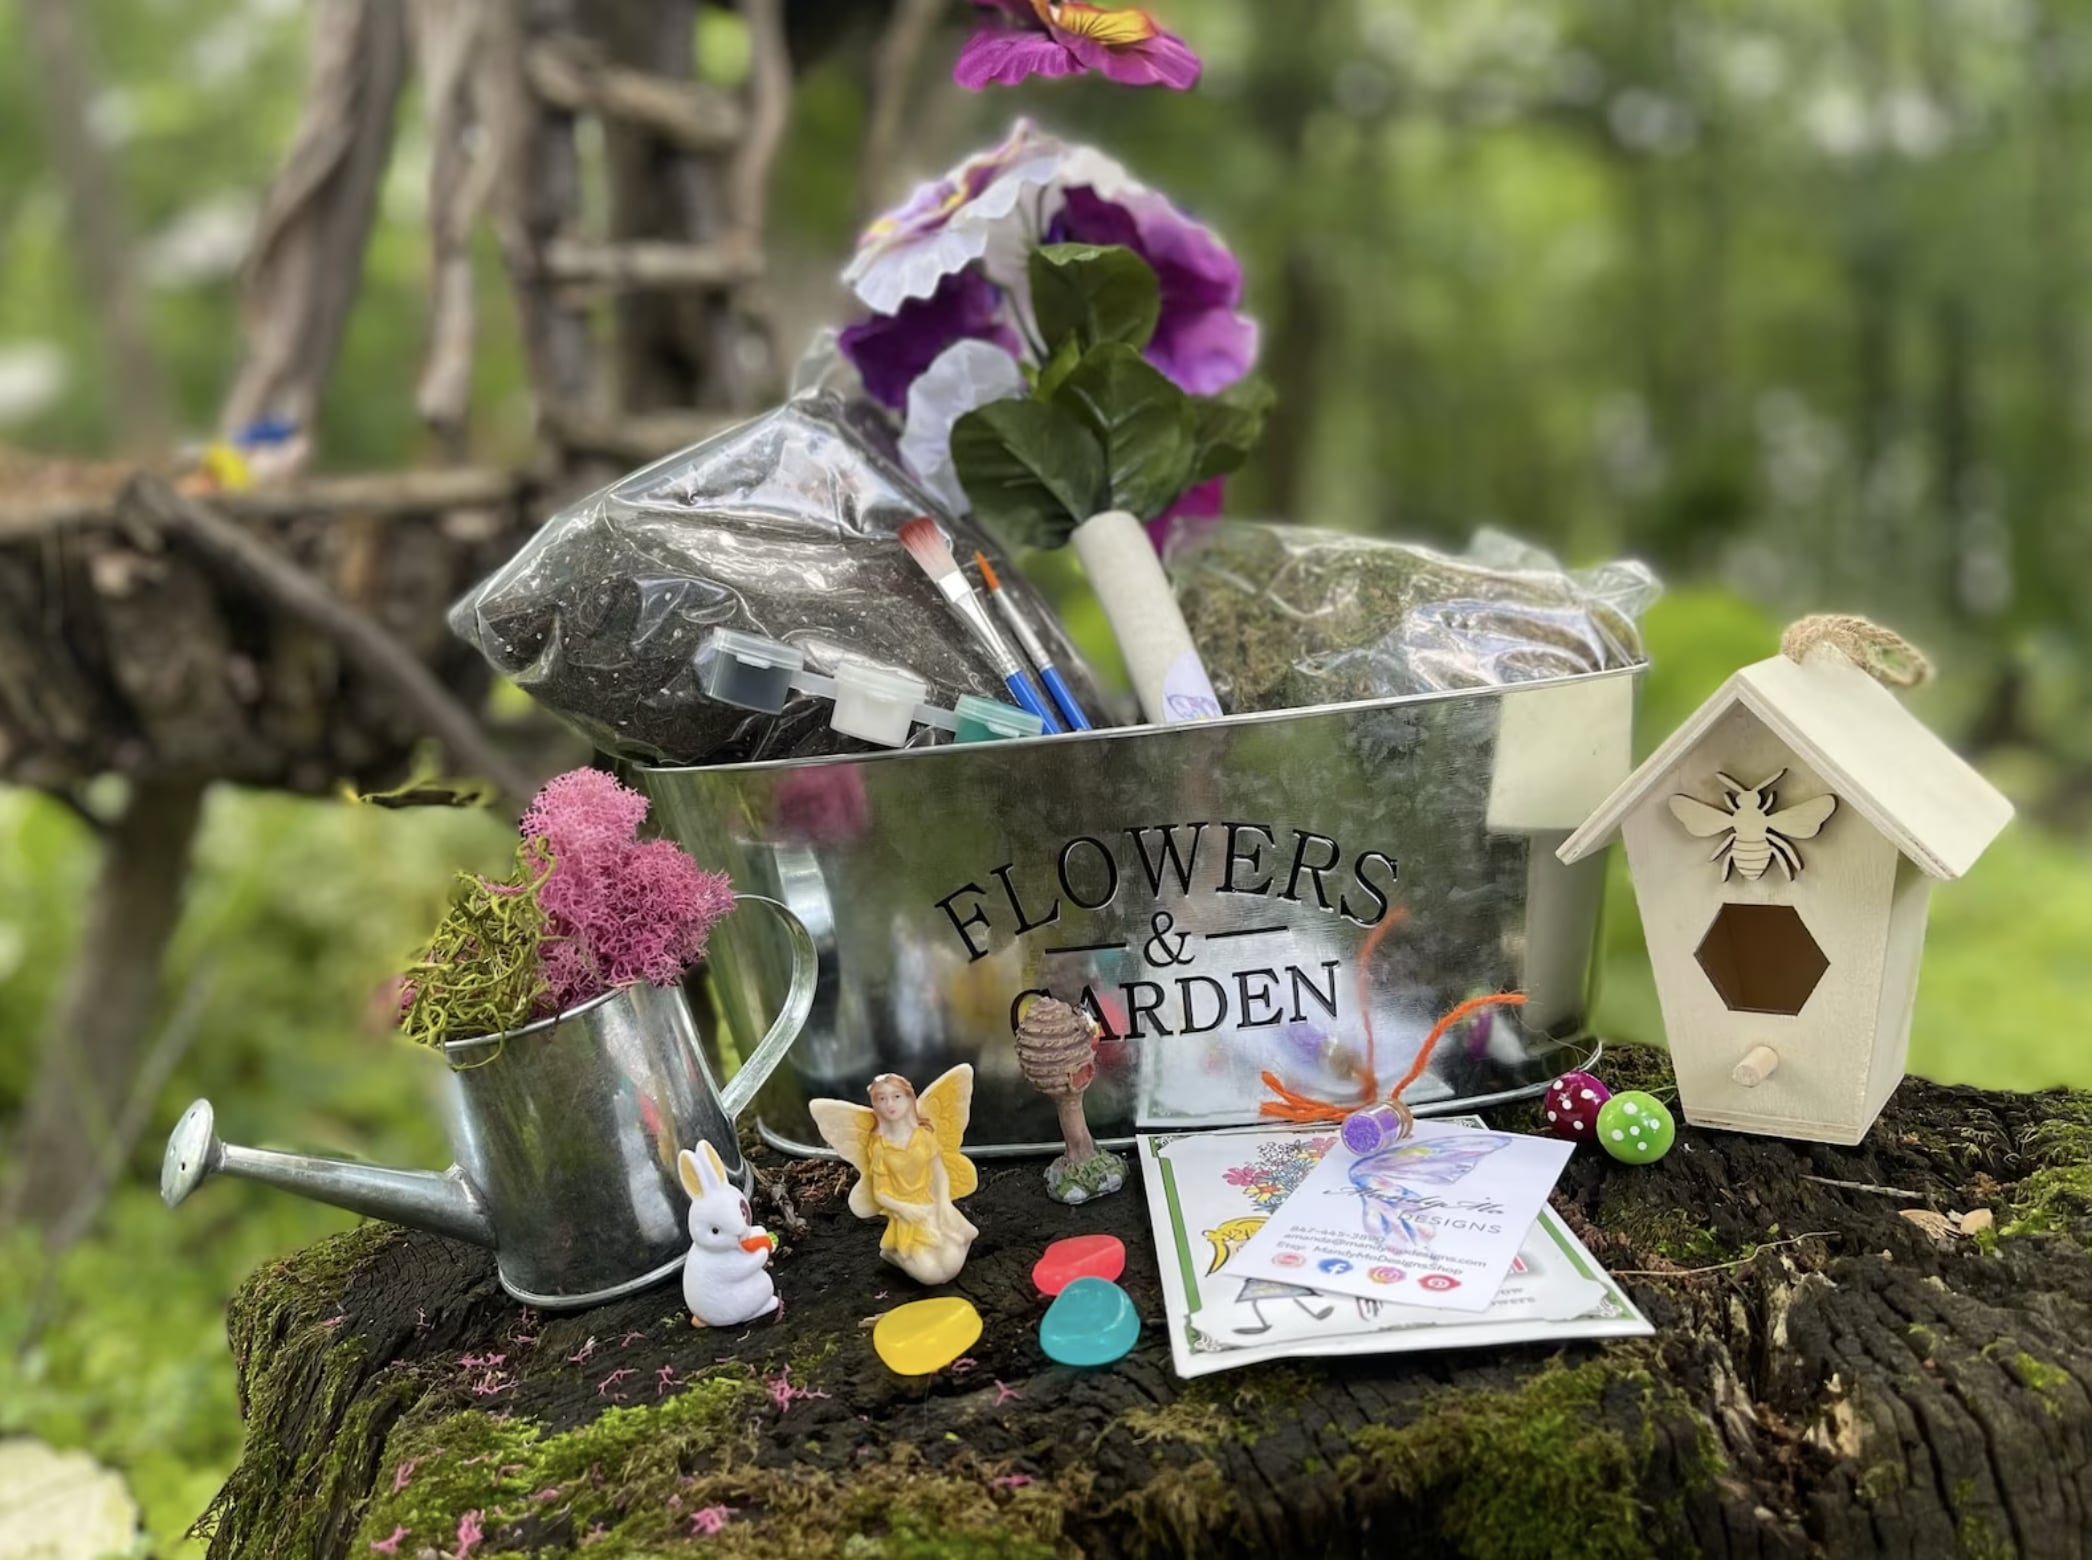 Buy Custom Fairy Garden Kits, Kids Garden, Indoor Garden,Fairy